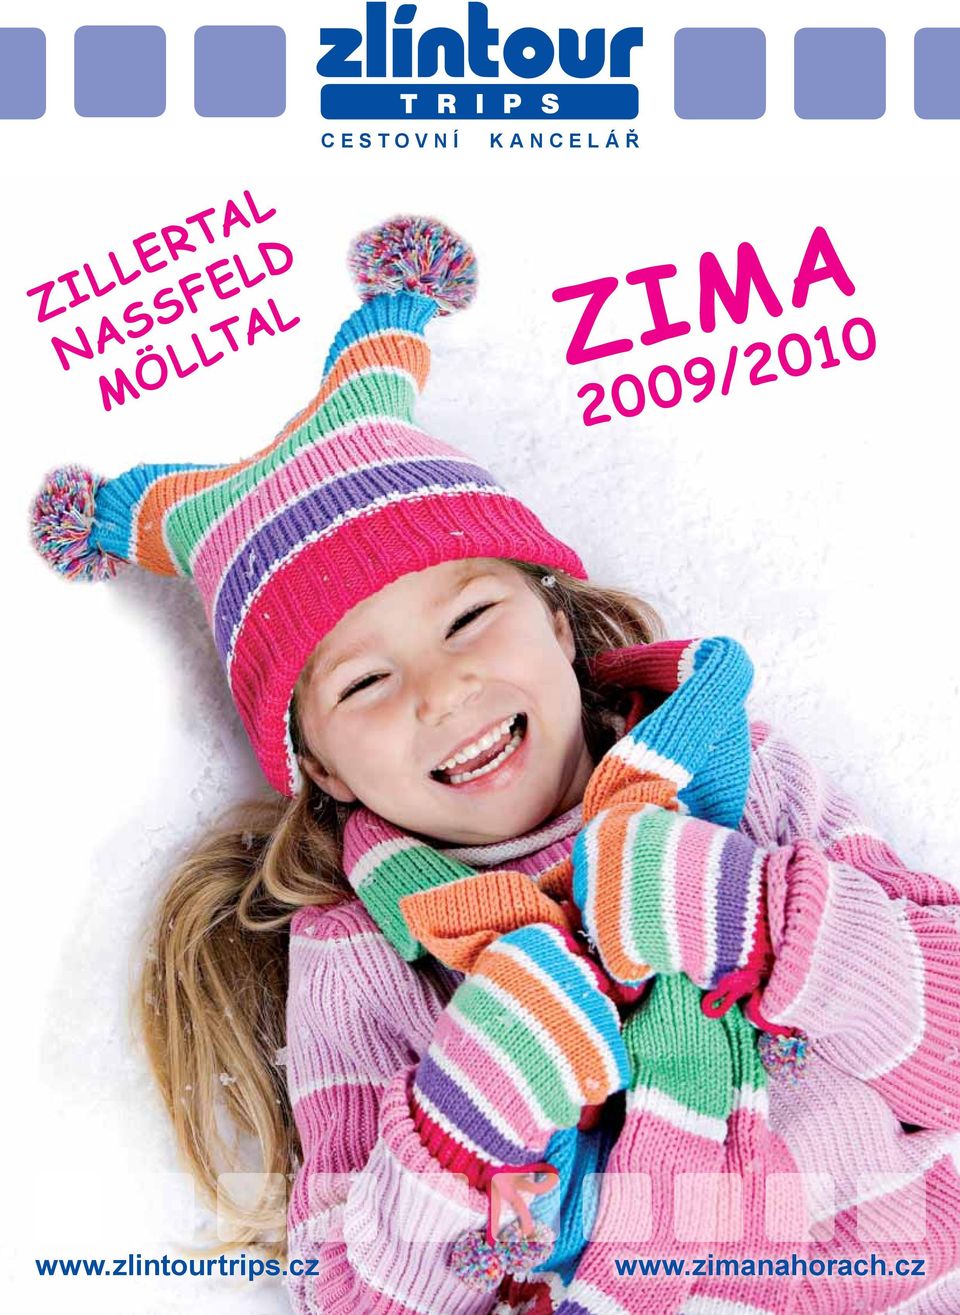 MÖLLTAL ZIMA 2009/2010